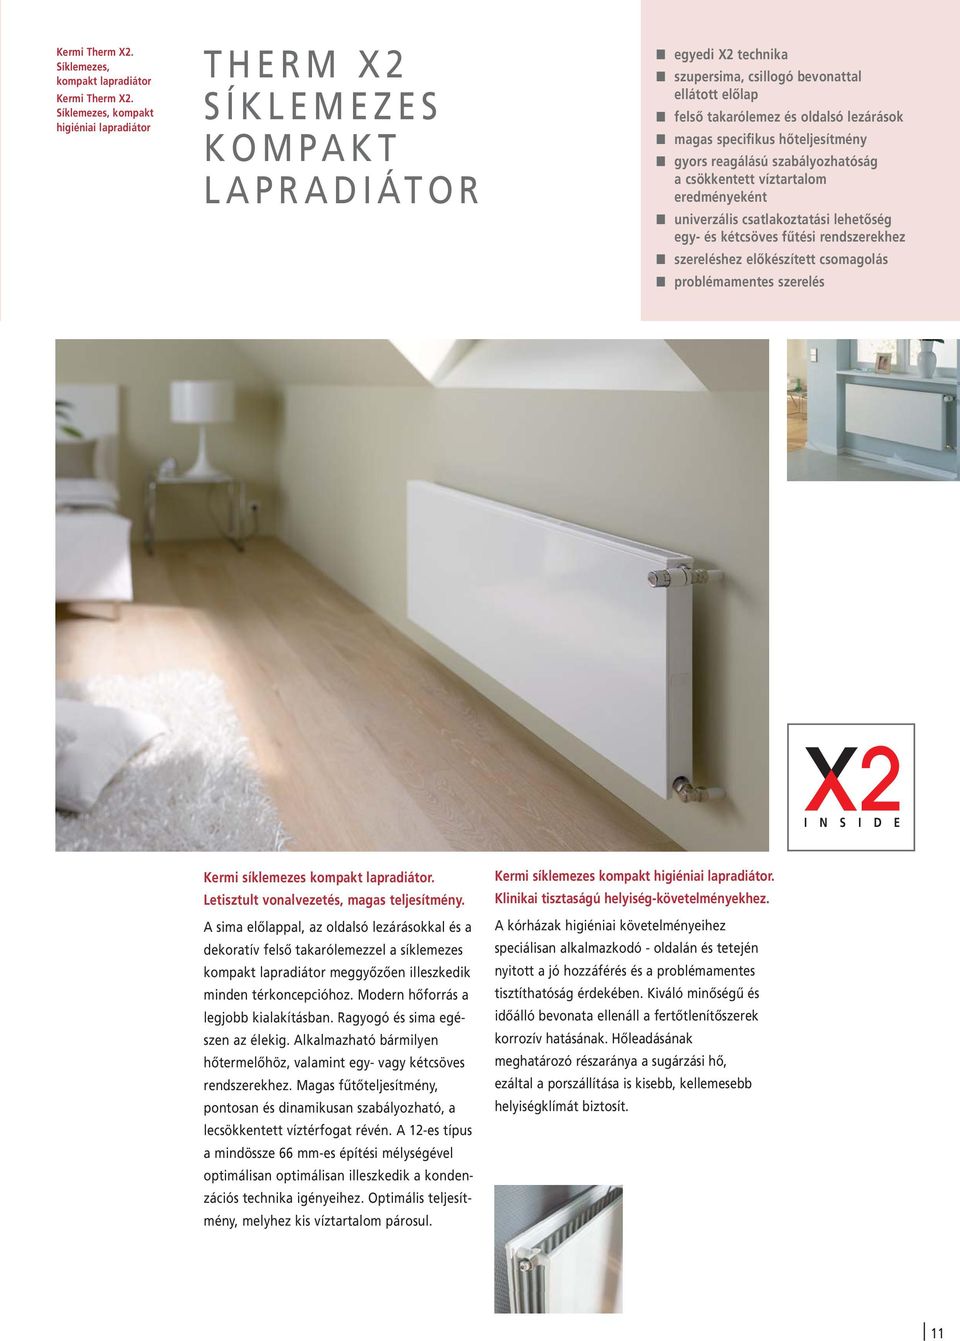 Therm X2. Az energiatakarékos. radiátor. Lapradiátorok Műszaki leírás I/  PDF Ingyenes letöltés